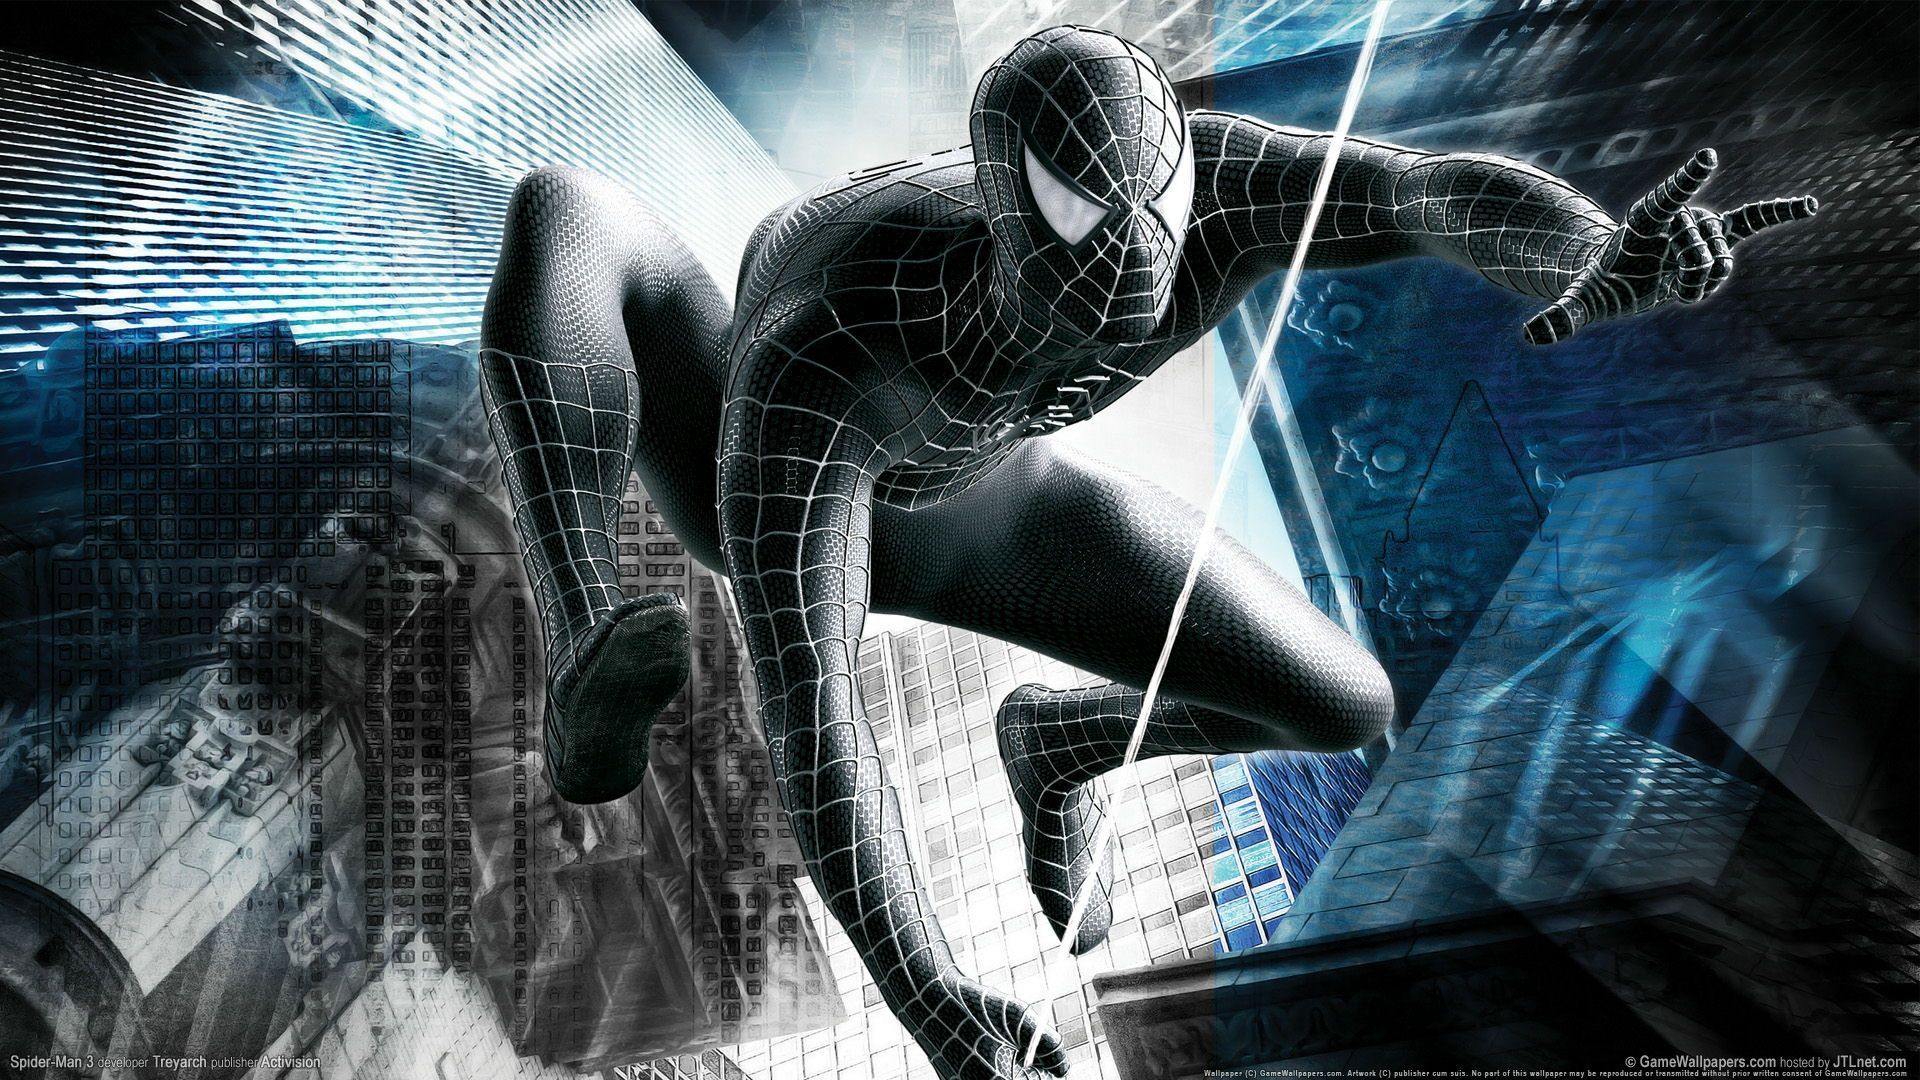 Hd 1920x1080 Big Spider Man Desktop Wallpapers Backgrounds